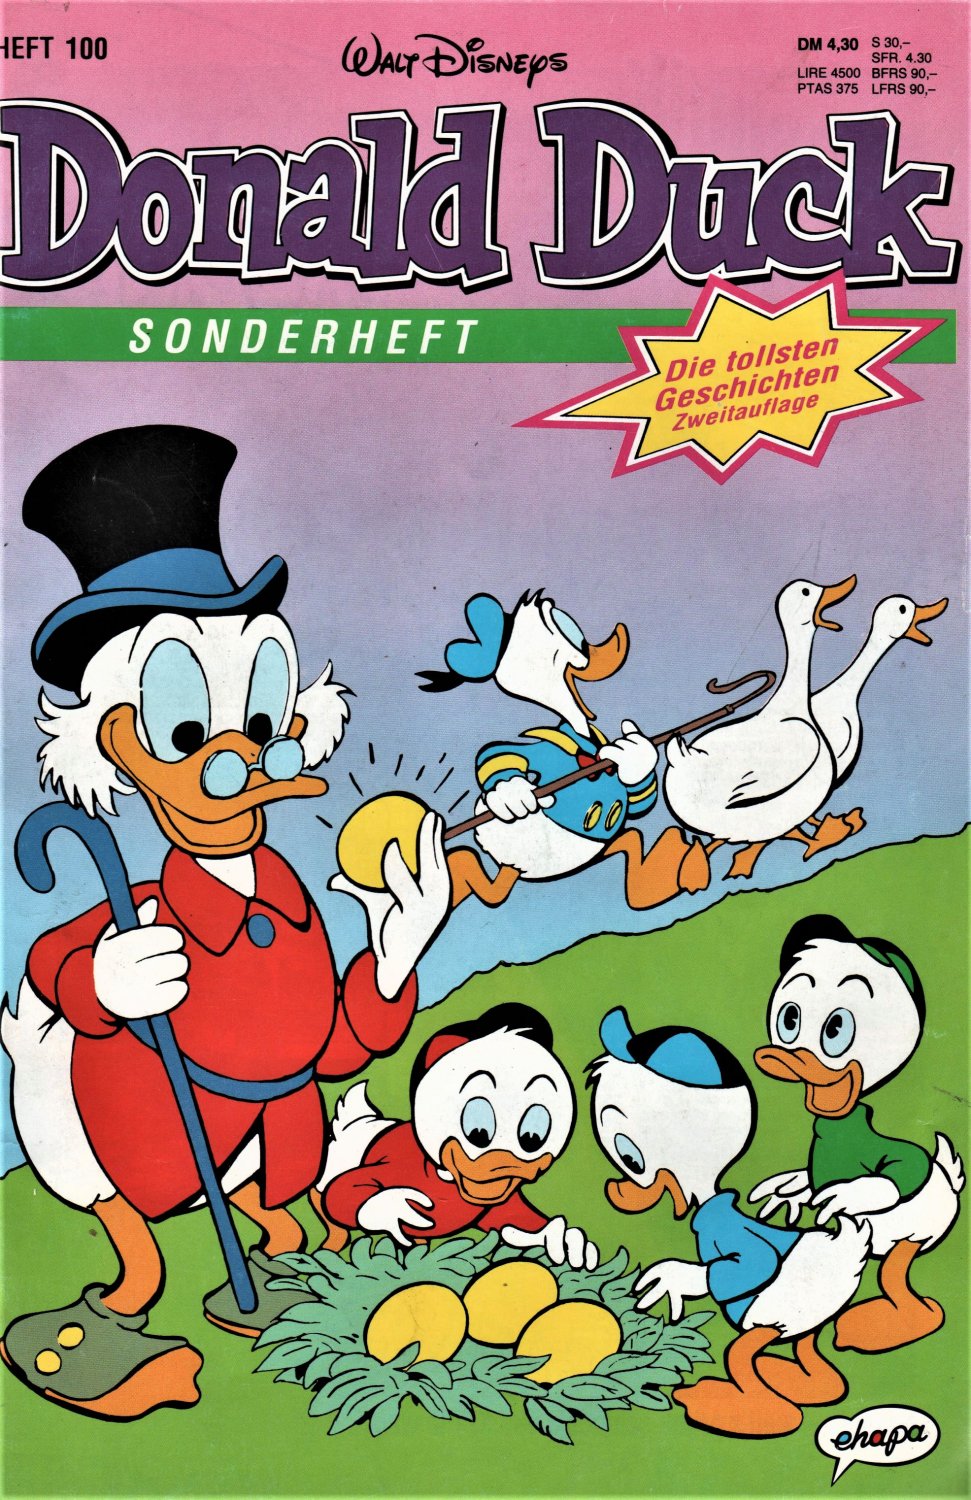 Sonderheft 89 1  x Comic z 1 Die tollsten Geschichten von  Donald Duck 